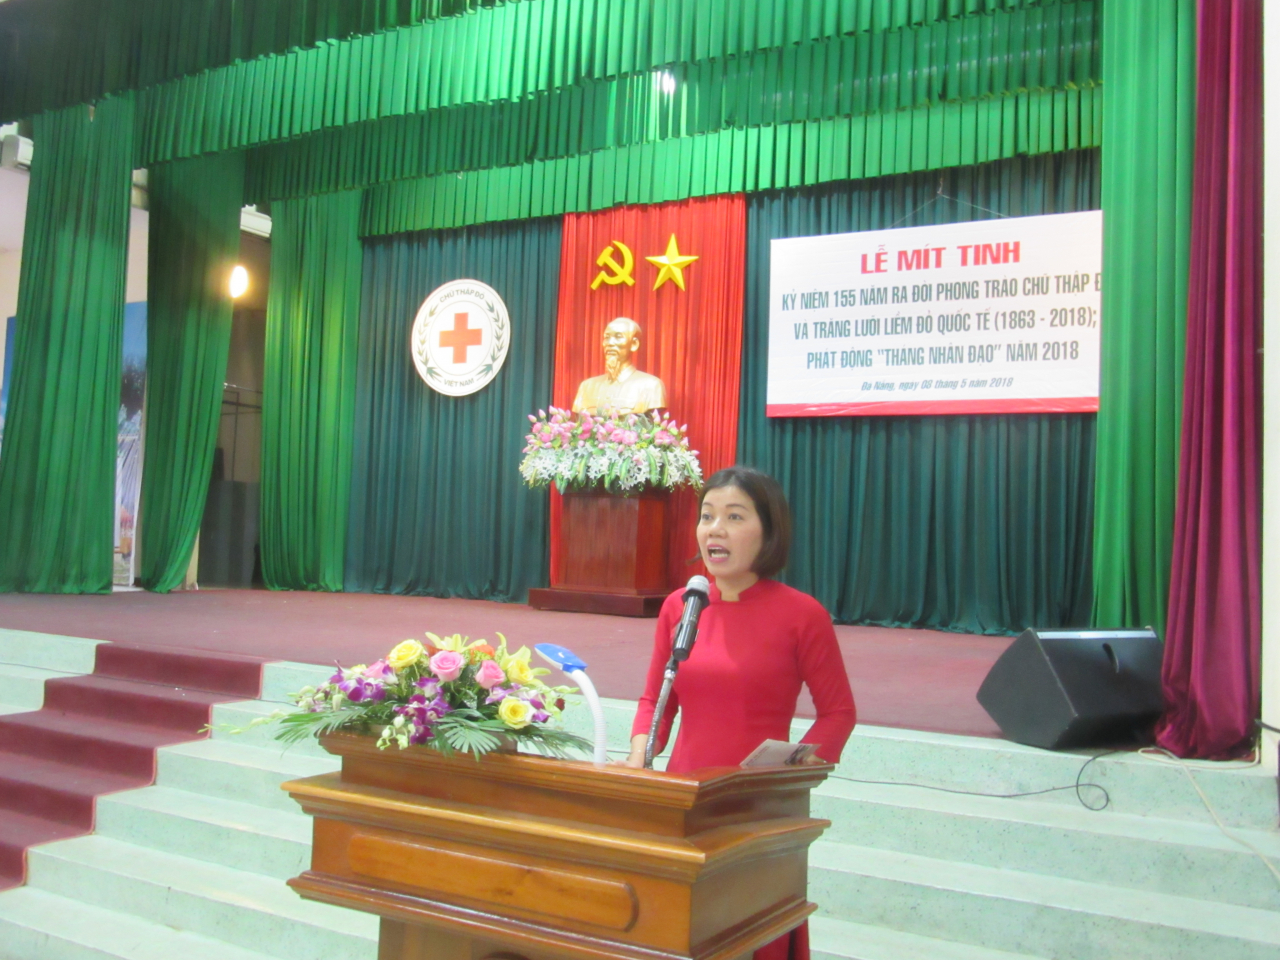 Phát biểu tại buổi lễ, Chủ tịch Hội CTĐ thành phố Đà Nẵng bà Lê Thị Như Hồng